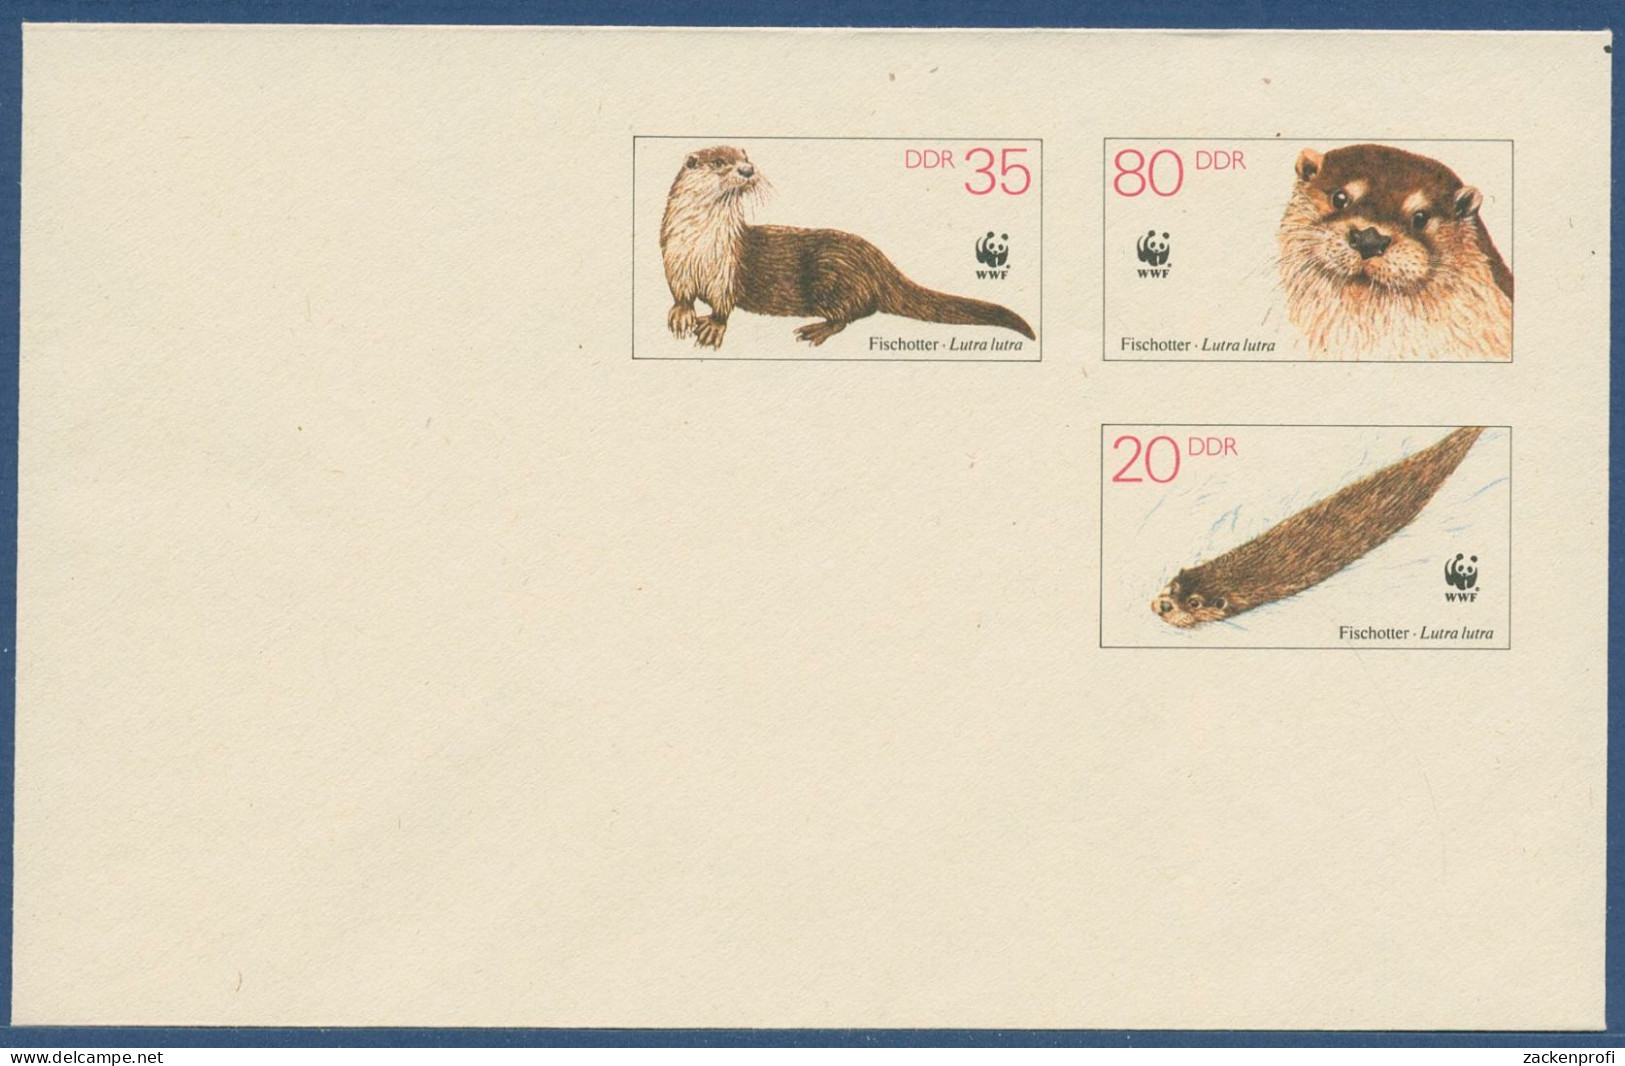 DDR 1987 WWF Naturschutz Fischotter Umschlag U 7 Ungebraucht (X41064) - Covers - Mint